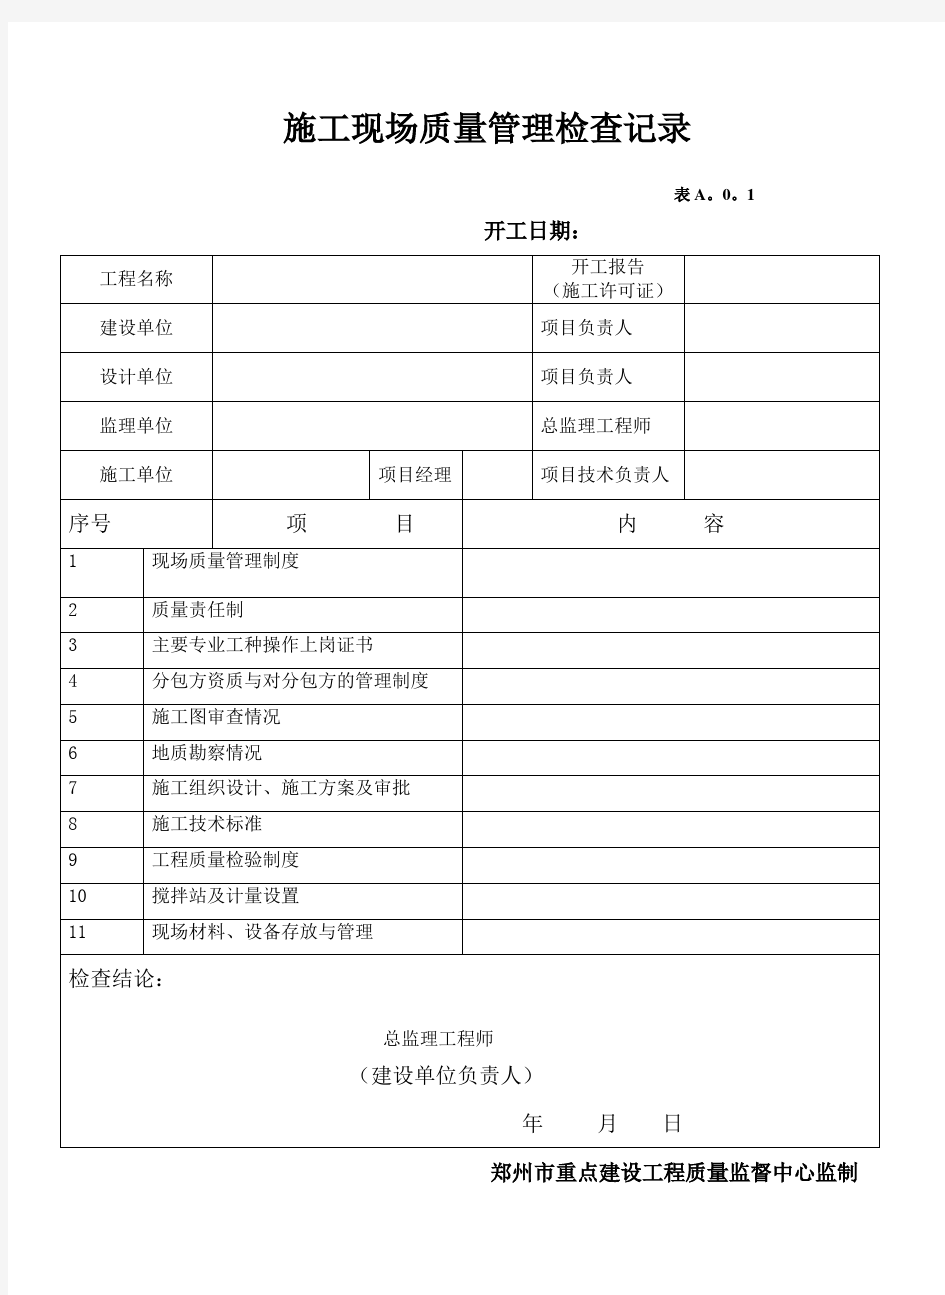 郑州市重点工程工程资料全套表格